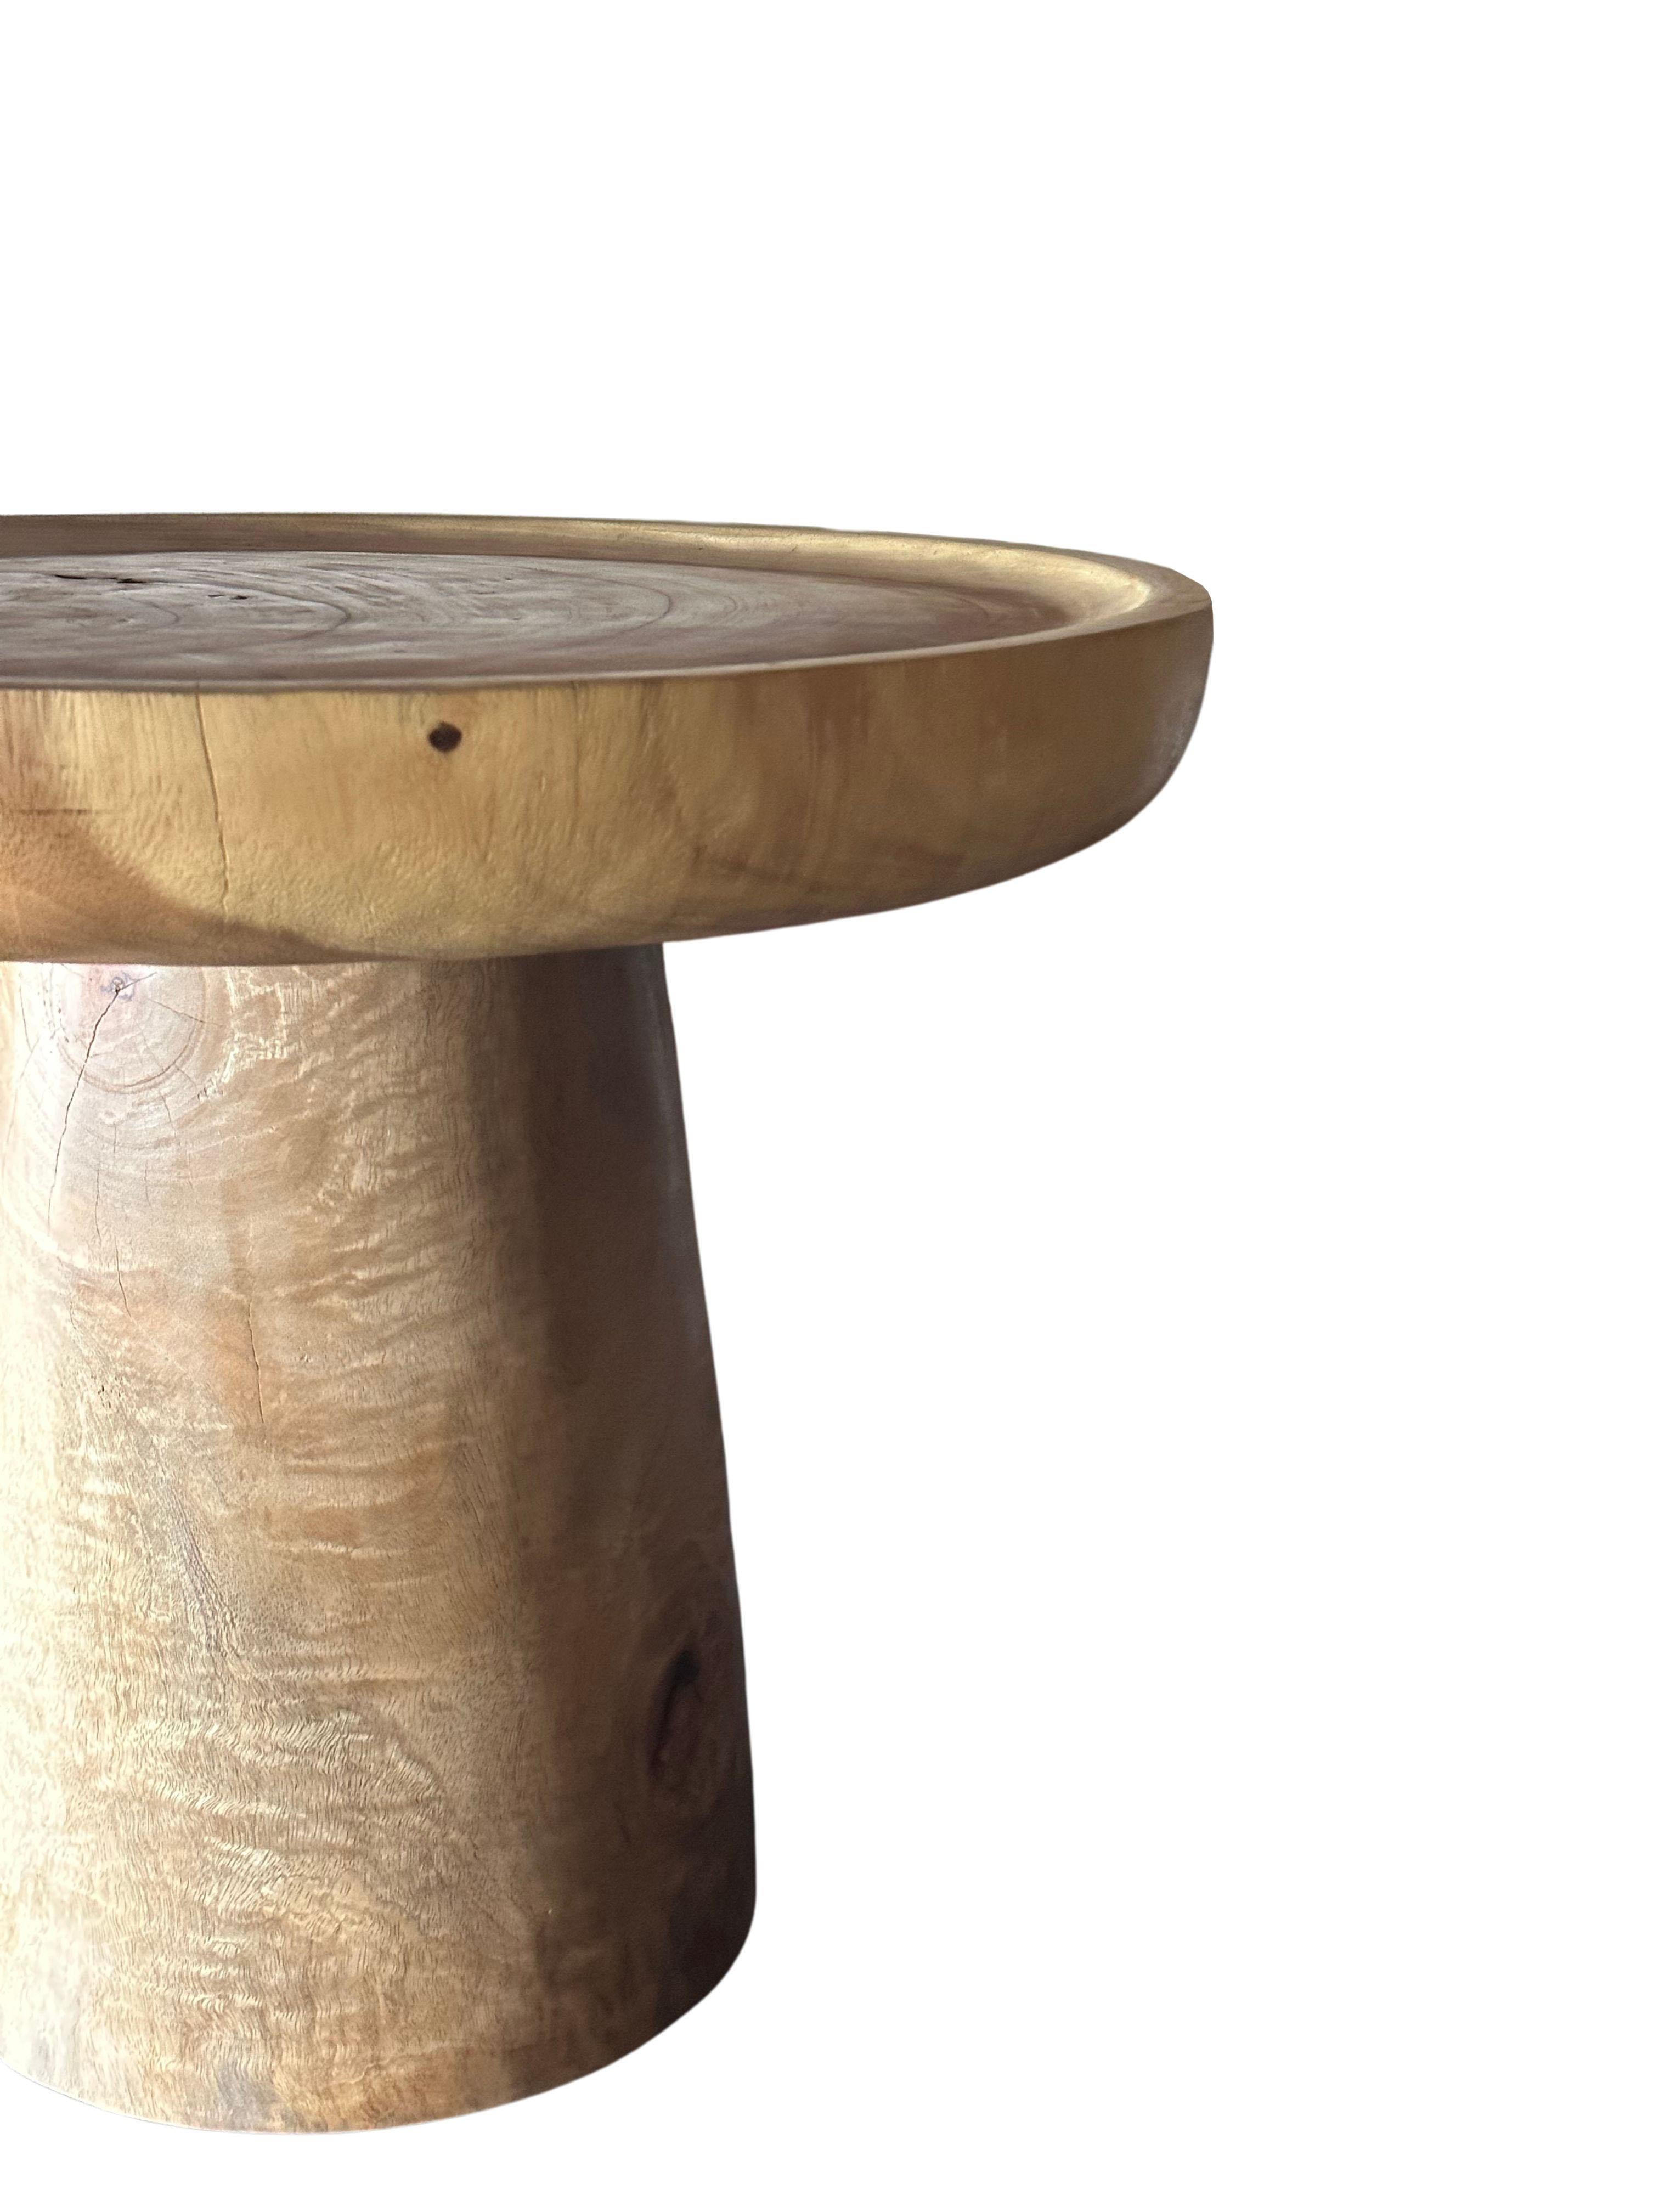 Cette table d'appoint ronde merveilleusement sculpturale présente un plateau avec une cuvette peu profonde et une bordure qui court sur toute sa circonférence. Le pigment neutre de la table lui permet de s'intégrer parfaitement dans n'importe quel